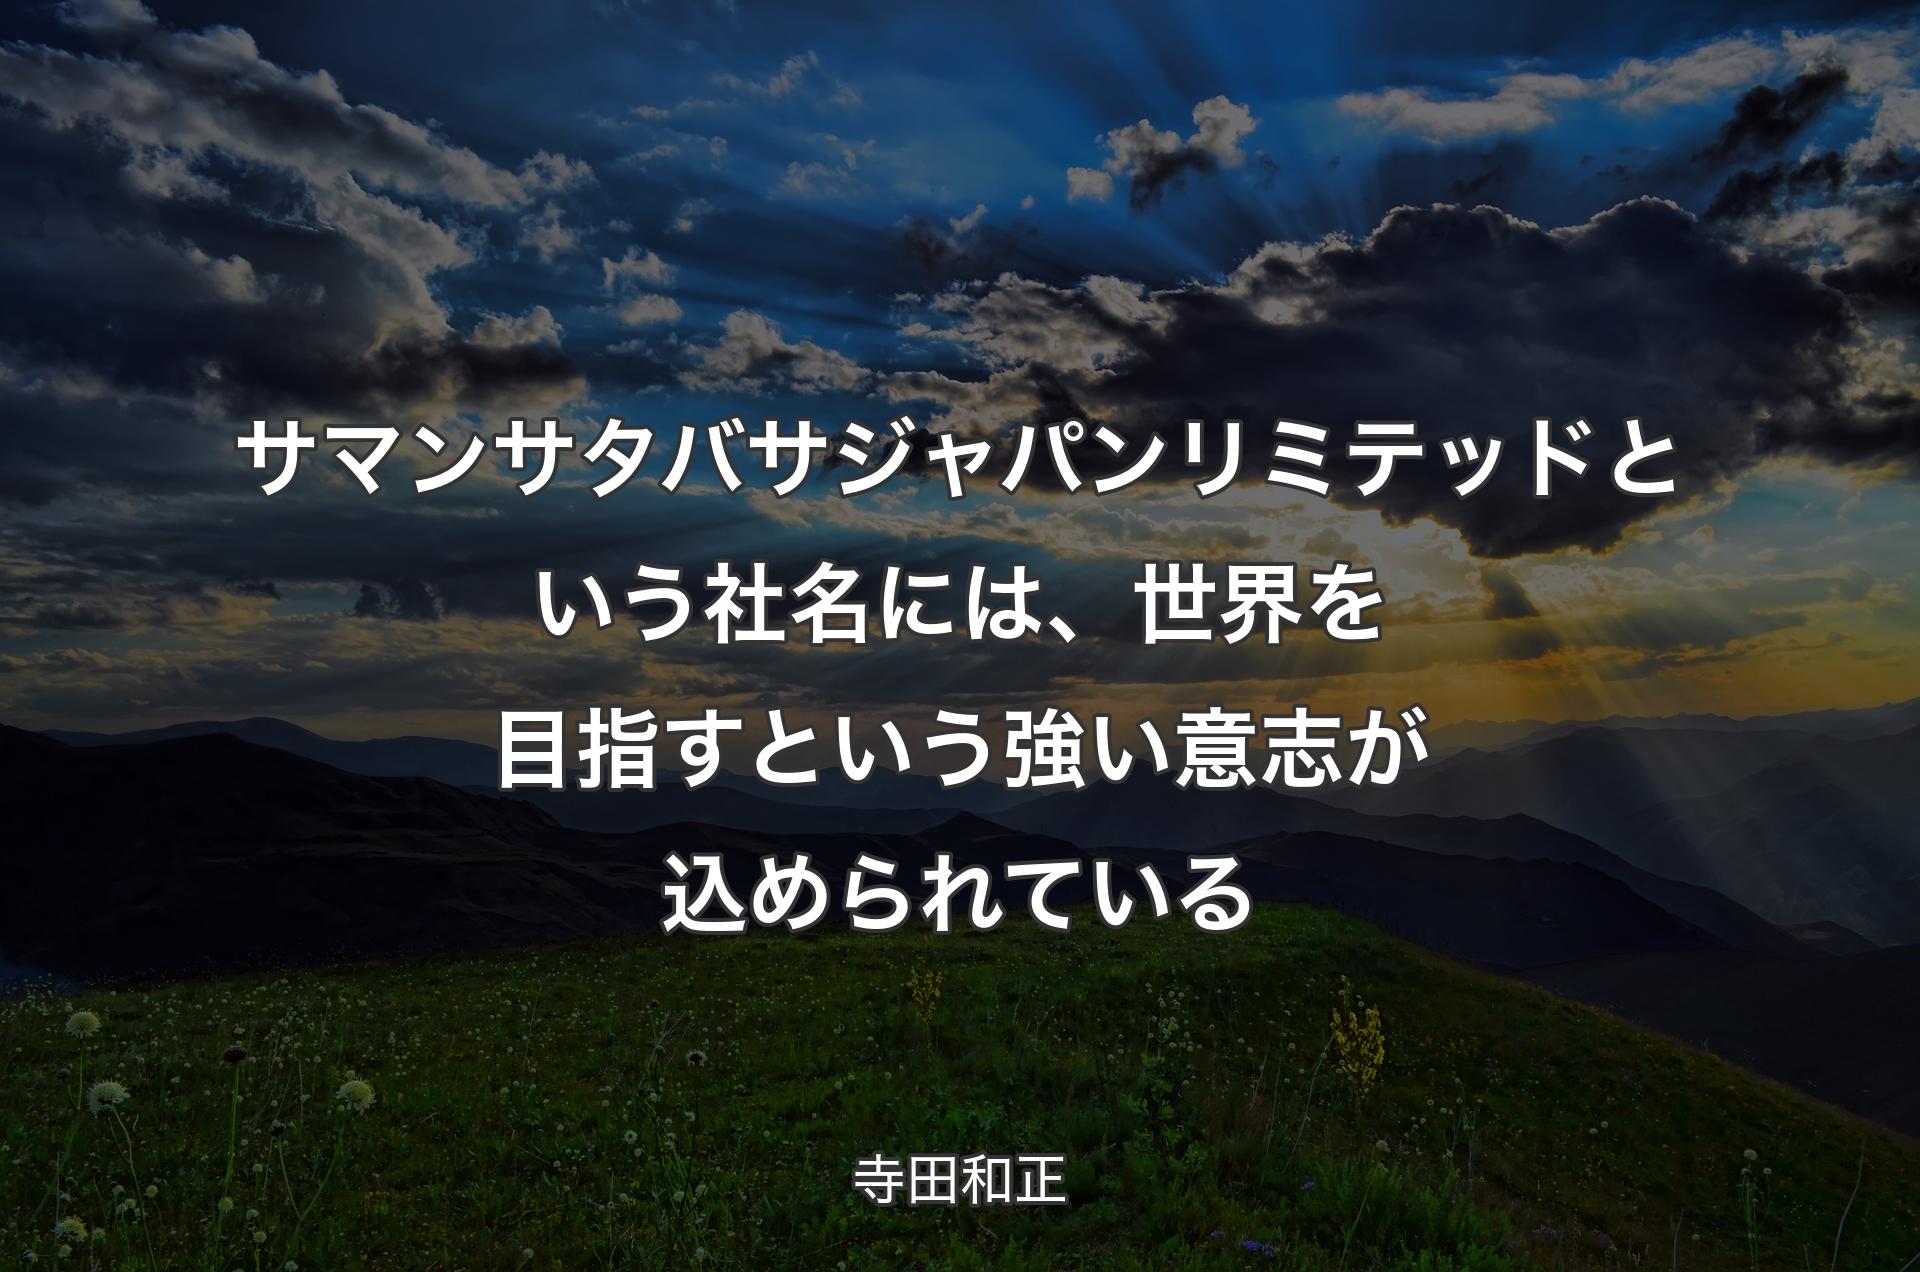 サマンサタバサジャパンリミテッドという社名には、世界を目指すという強い意志が込められている - 寺田和正